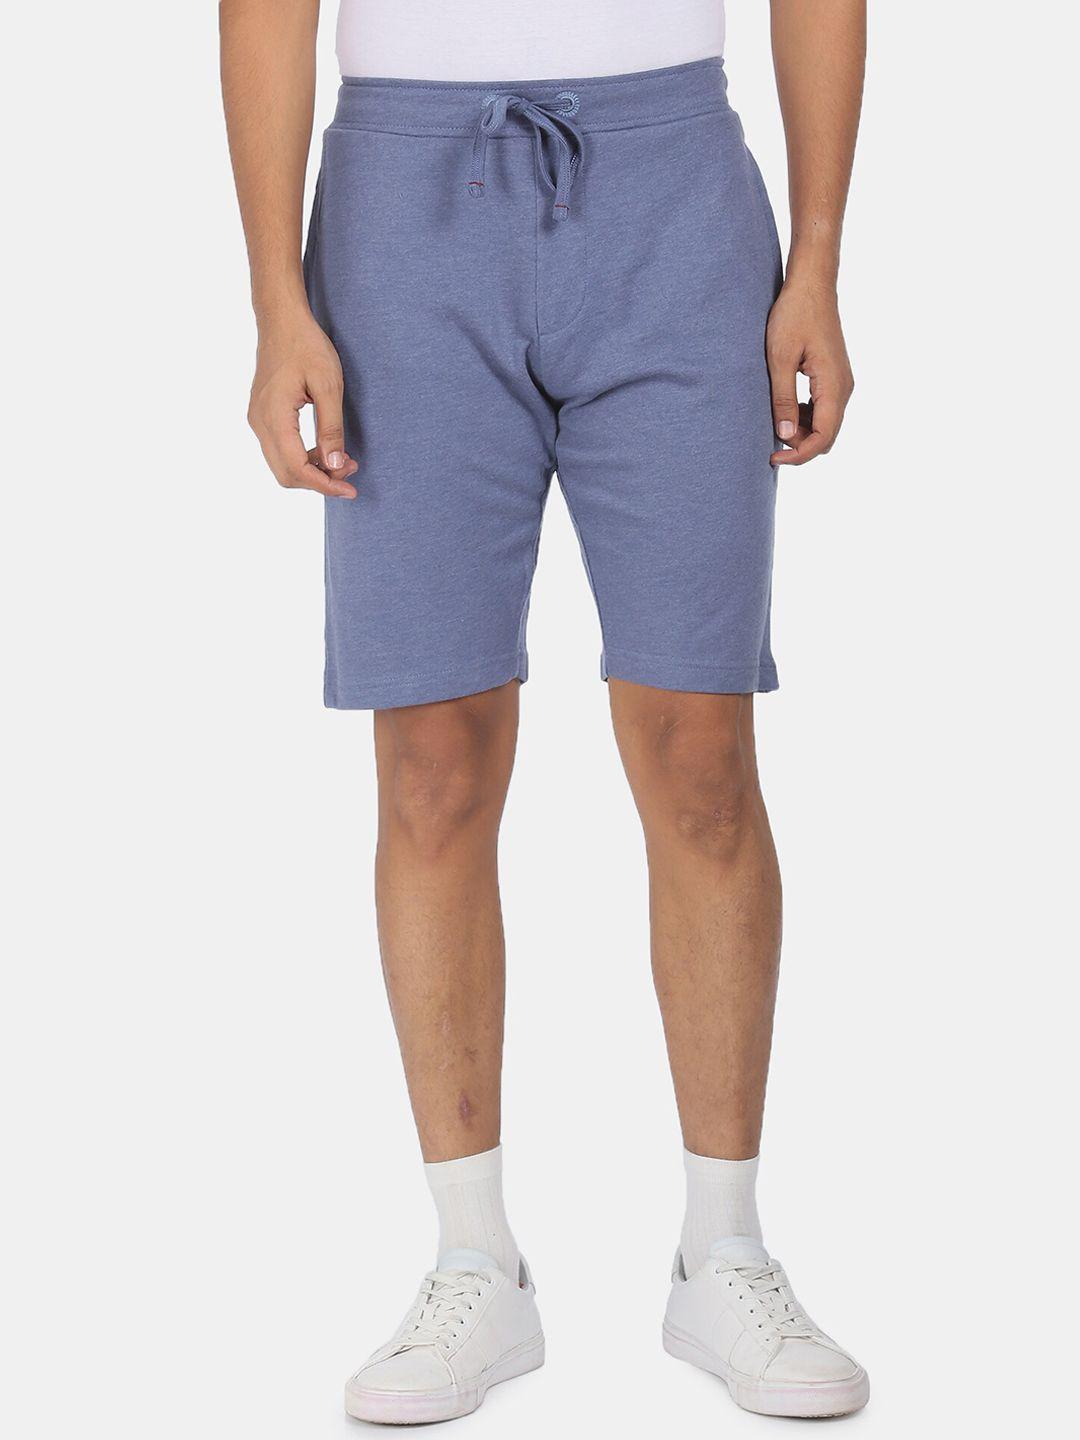 arrow-sport-men-blue-regular-shorts